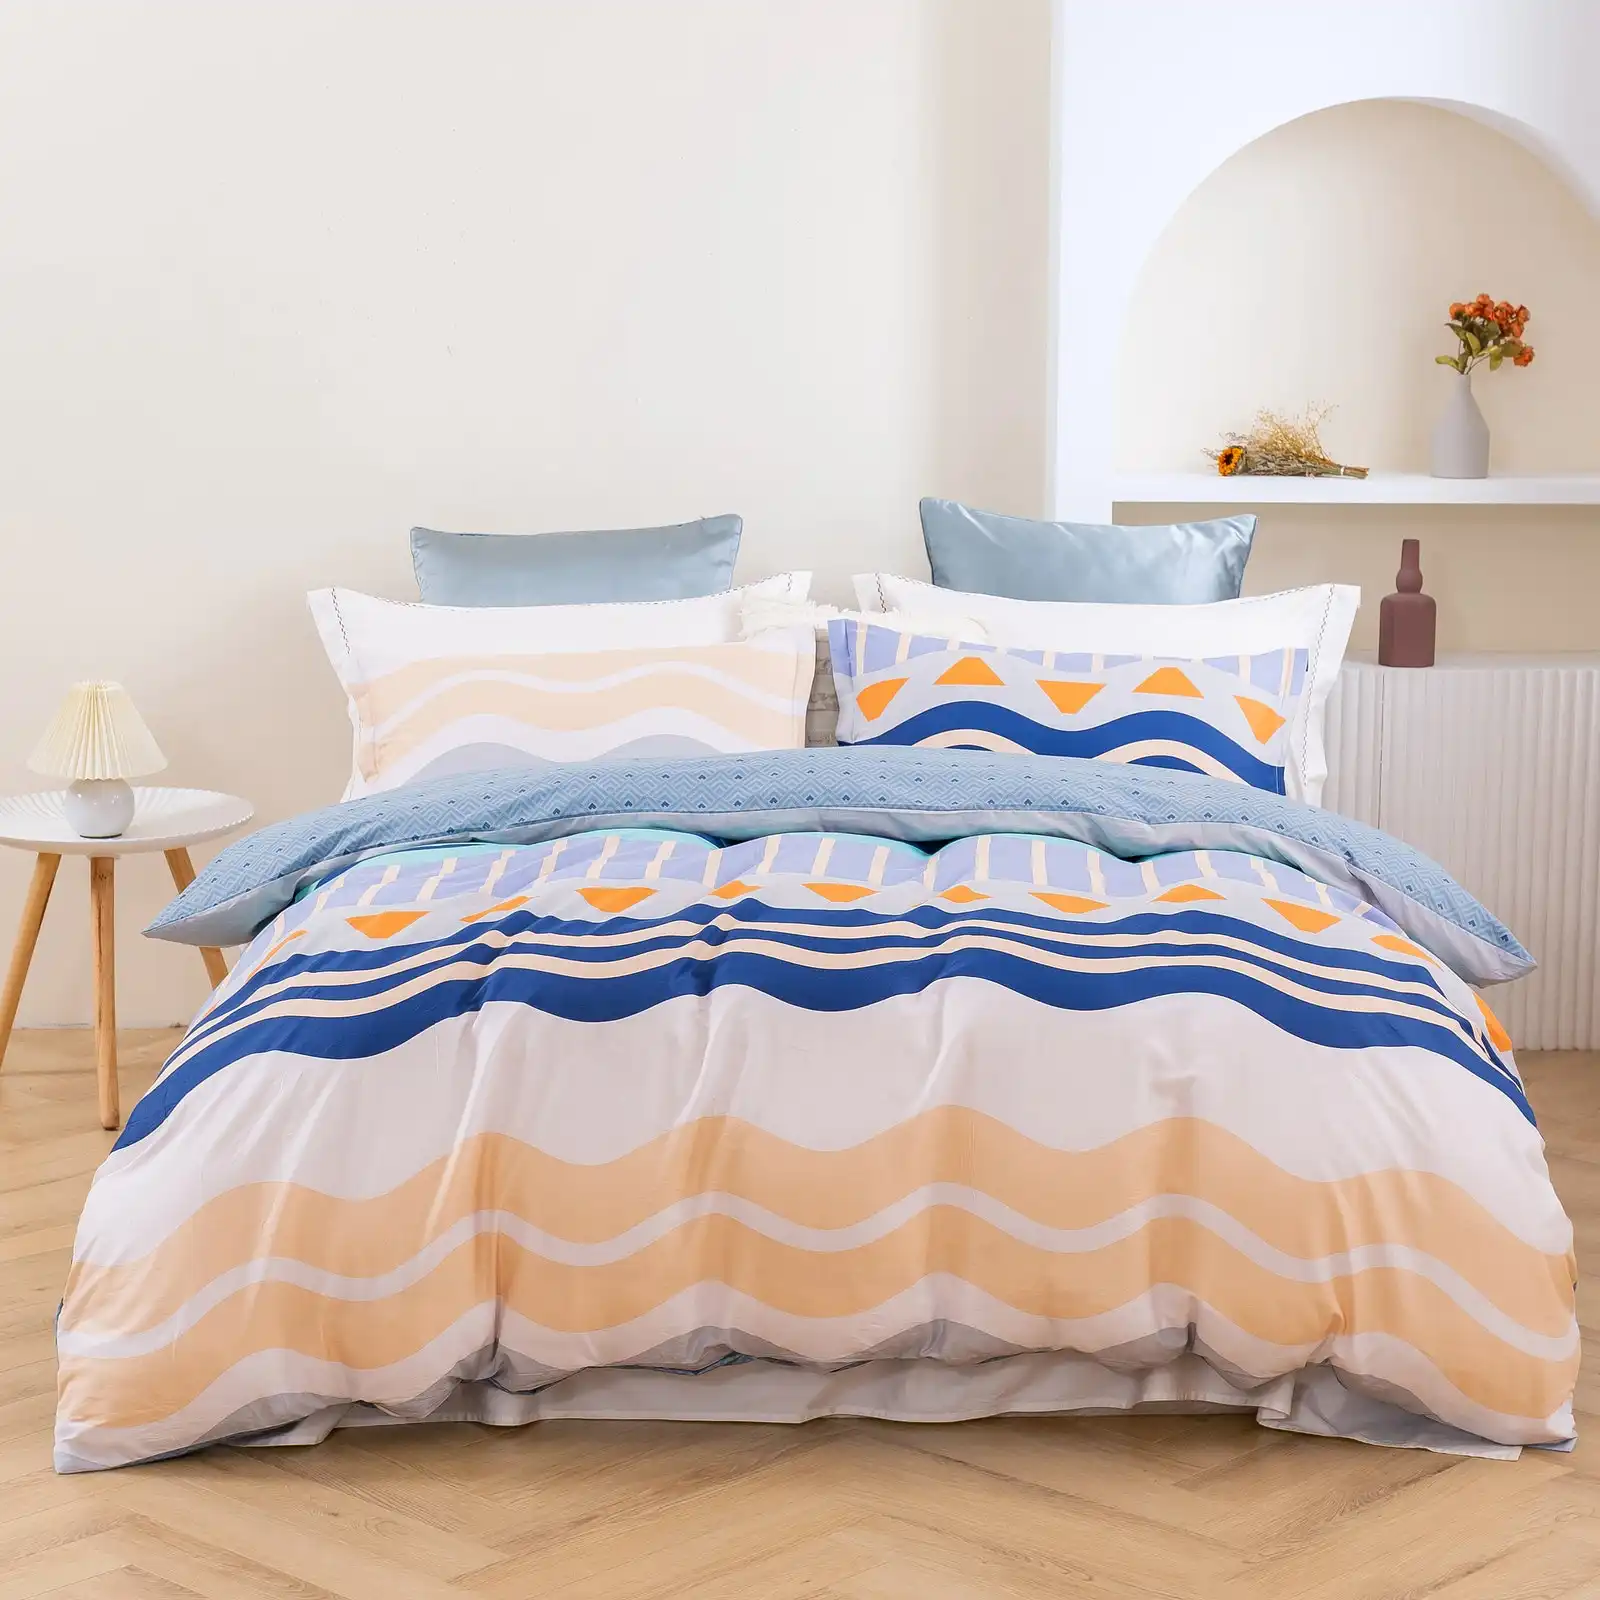 Dreamaker Capri 100% Cotton Reversible Quilt Cover Set King Bed